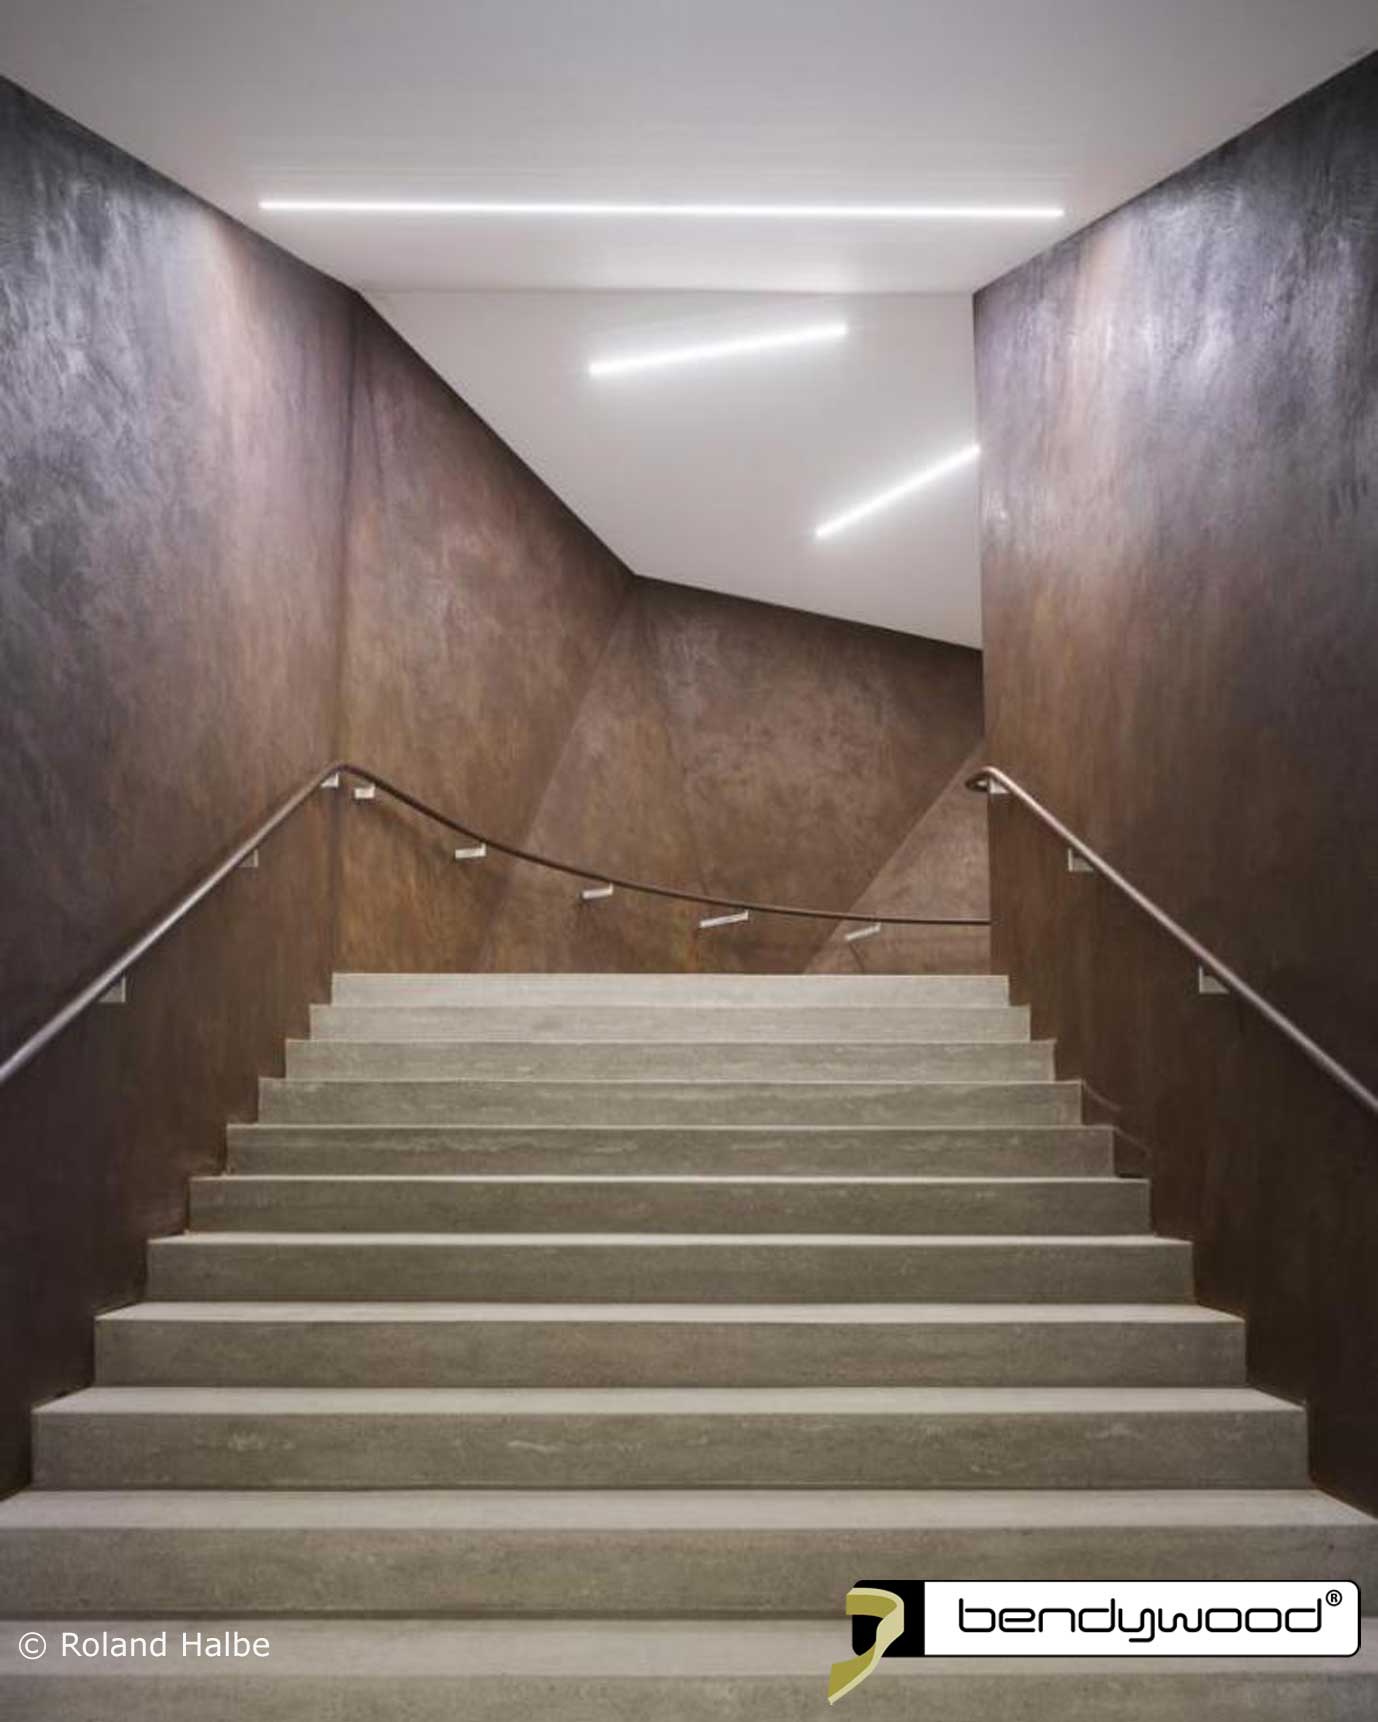 Escaleras de la nueva sala de conciertos en Andermatt, Suiza. Pasamanos curvados en roble Bendywood®.